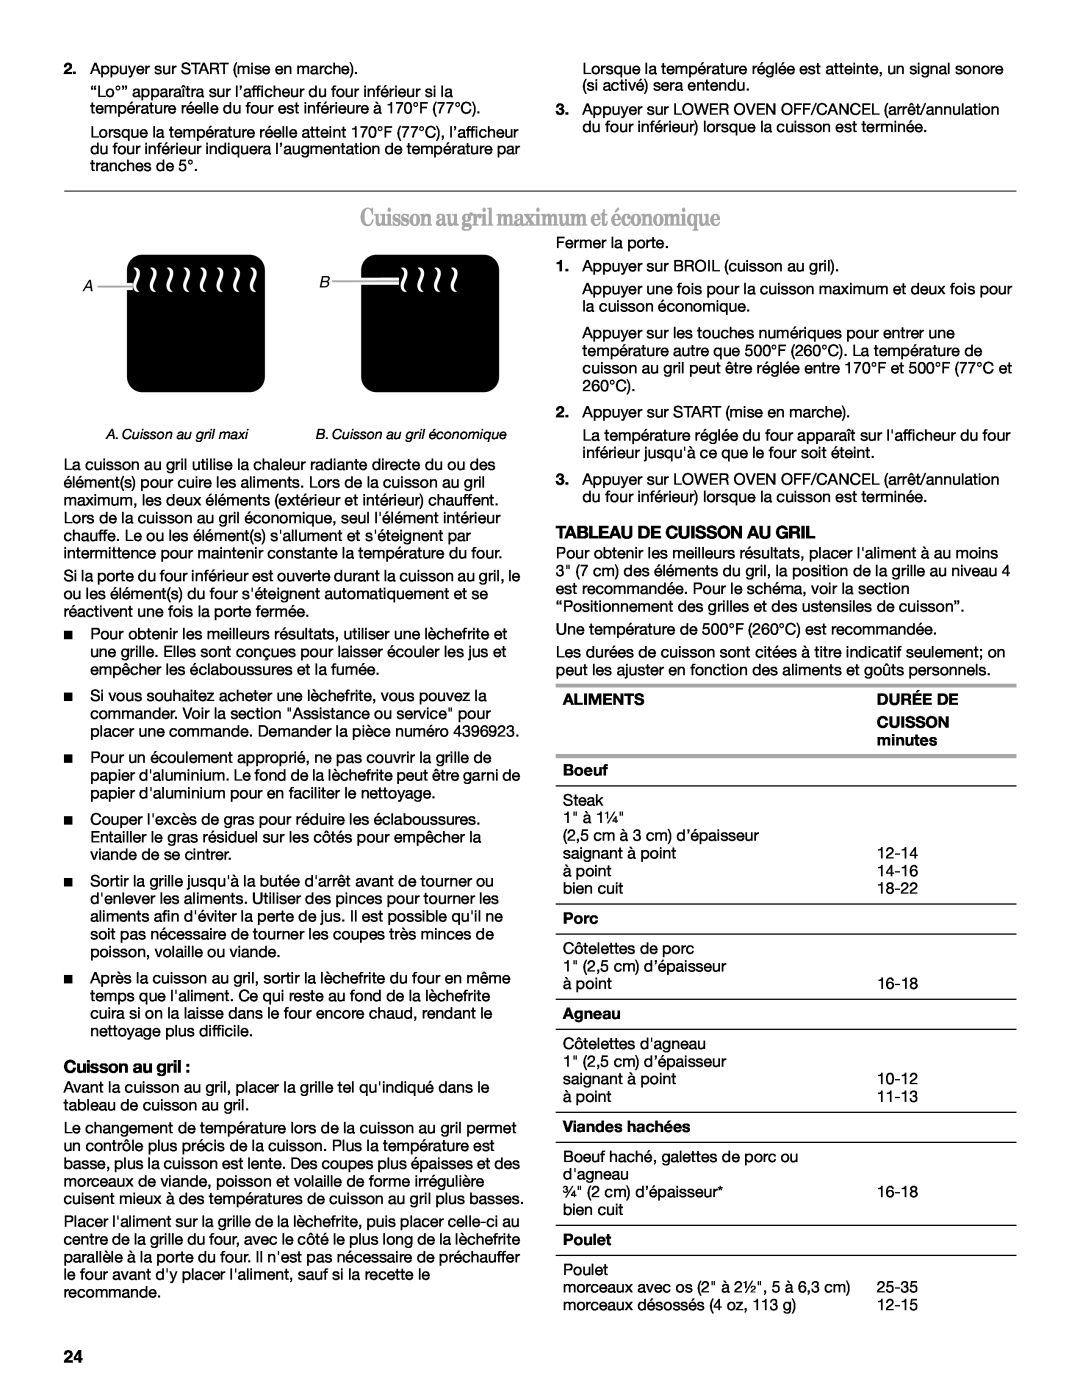 Whirlpool GSC309 manual Cuissonaugrilmaximumetéconomique, Cuisson au gril, Tableau De Cuisson Au Gril, A B 